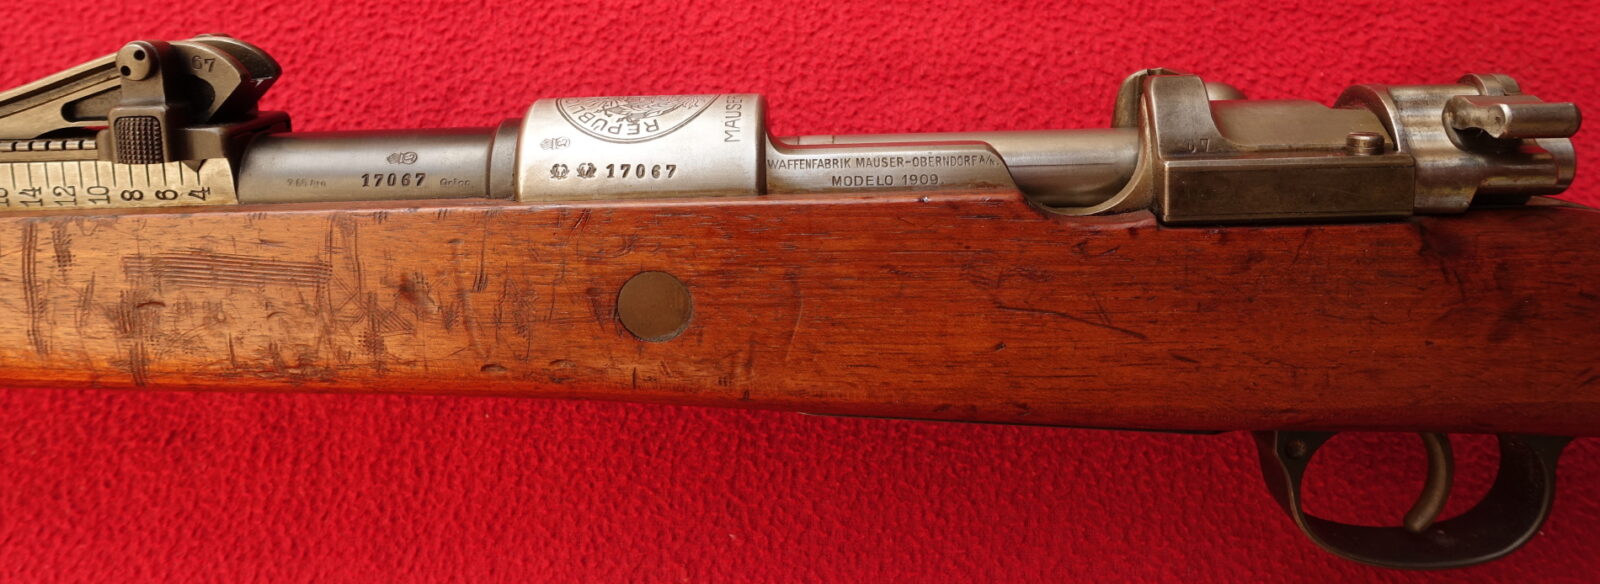 Puška Mauser 1909 pro Peru - Sběratelské zbraně